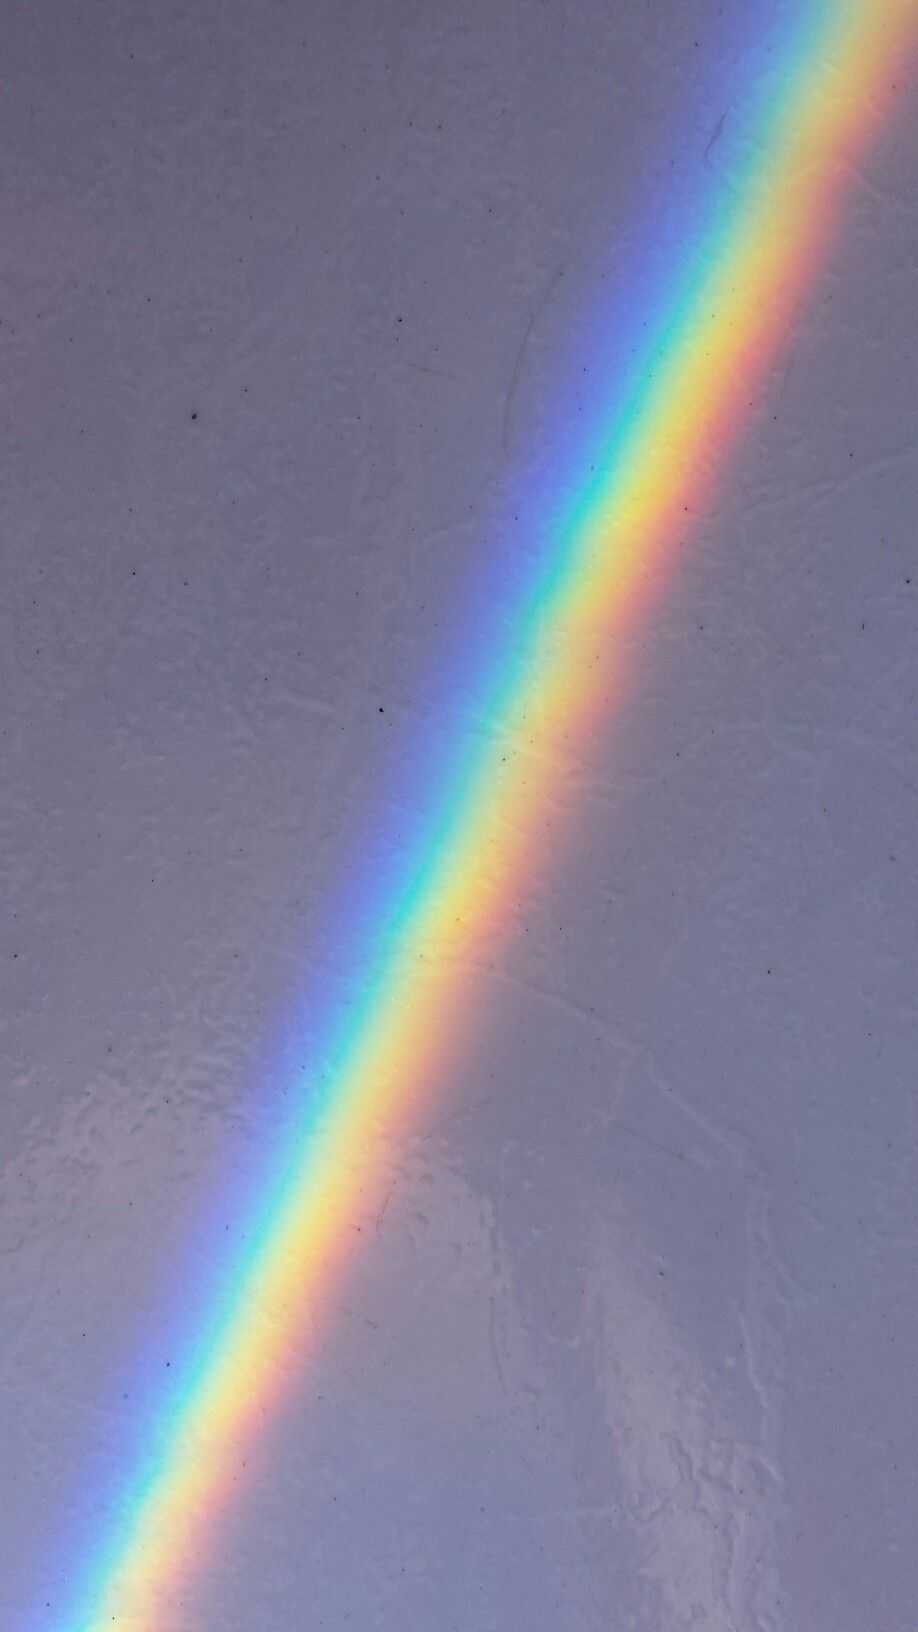 A rainbow is seen in the sky - Rainbows